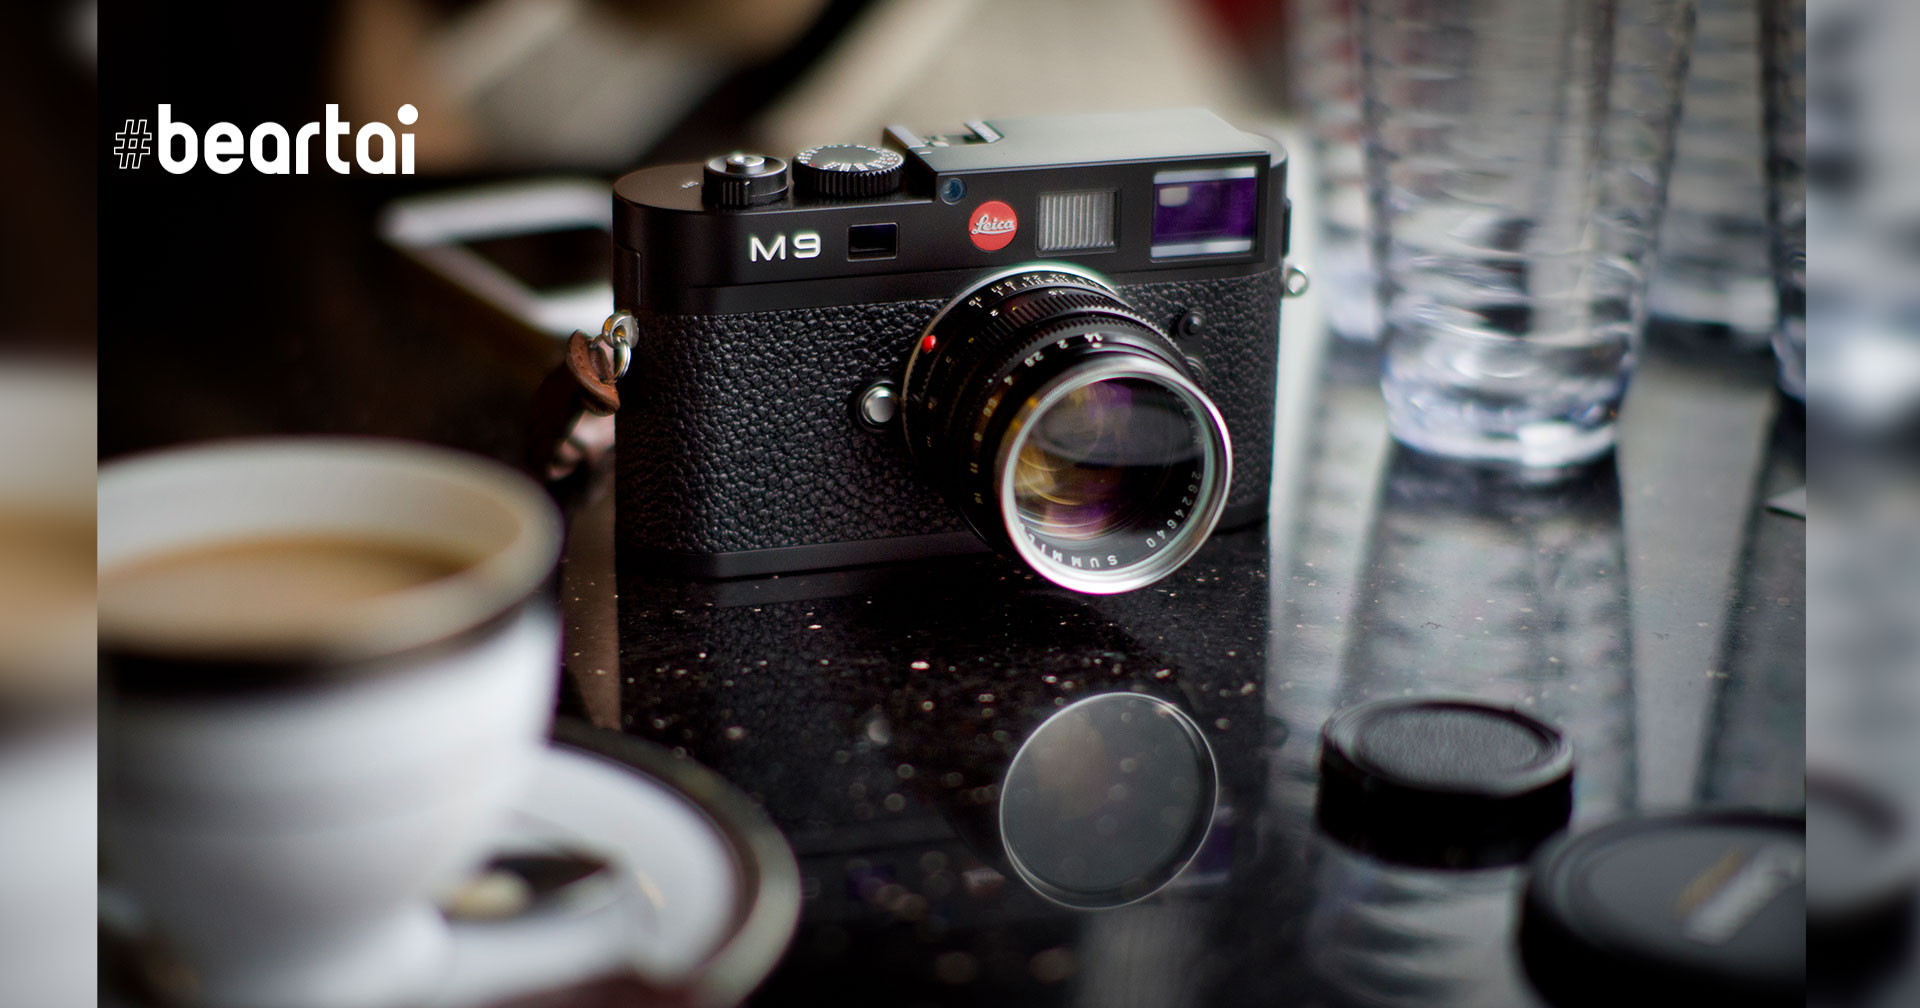 Leica เลิกผลิตเซนเซอร์ CCD ของ Leica M9 ทำให้ไม่มีอะไหล่เปลี่ยนให้กับตัวที่มีปัญหาอีกต่อไป